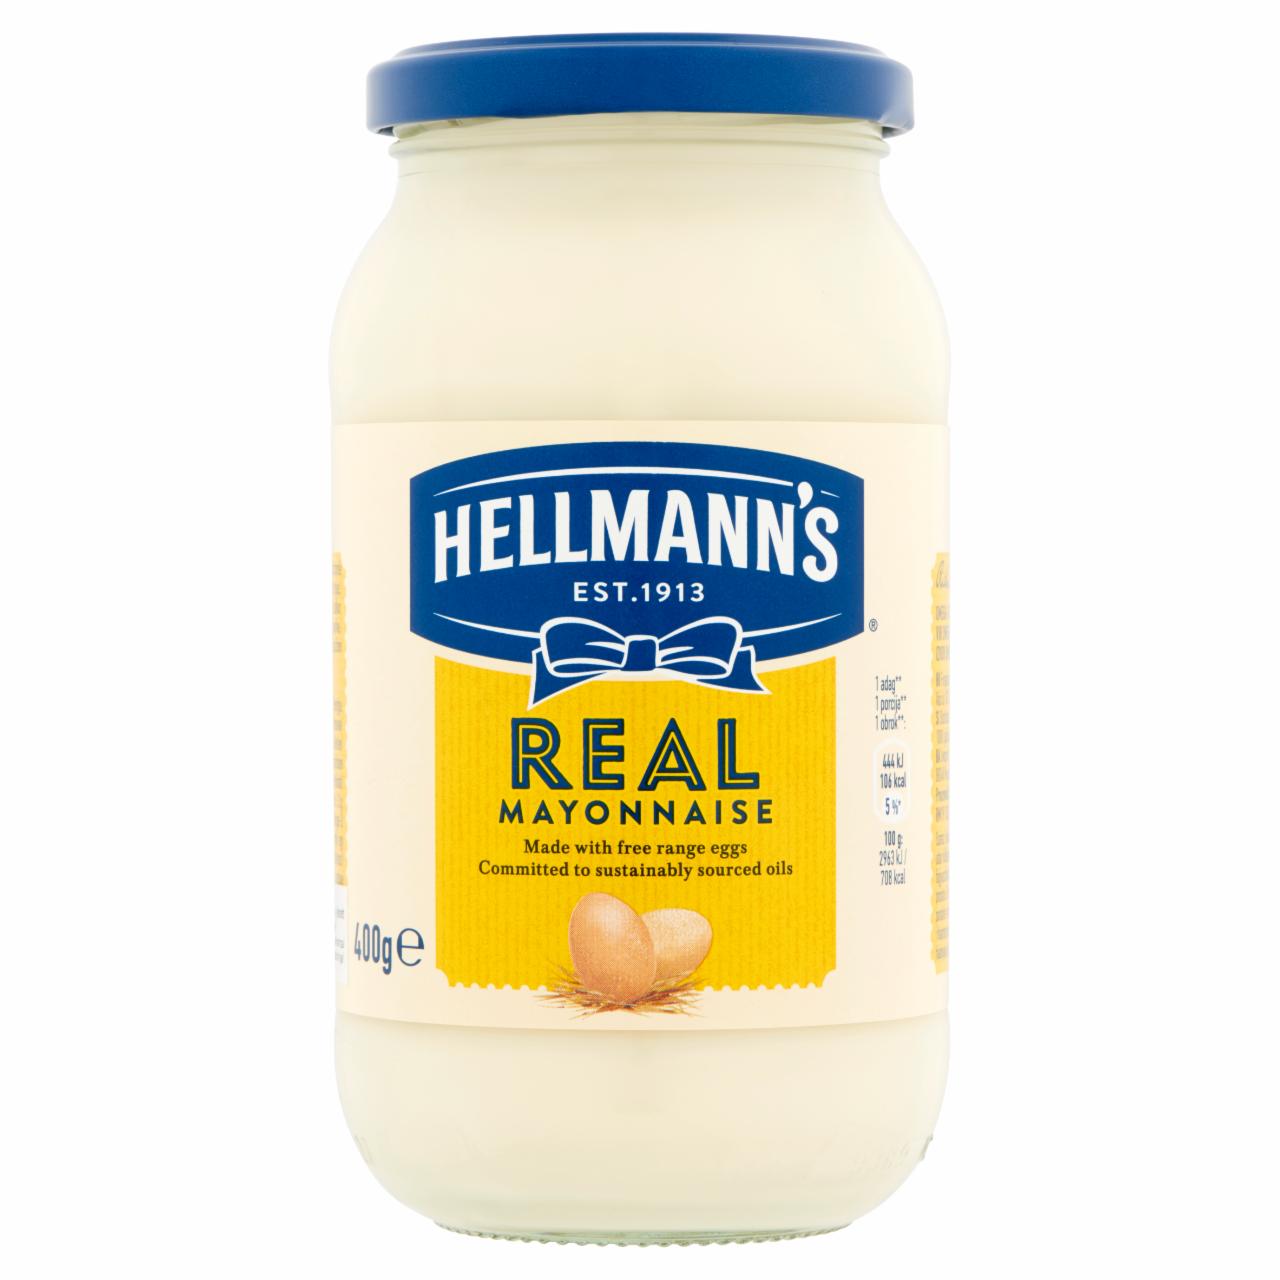 Képek - Hellmann's majonéz 400 g